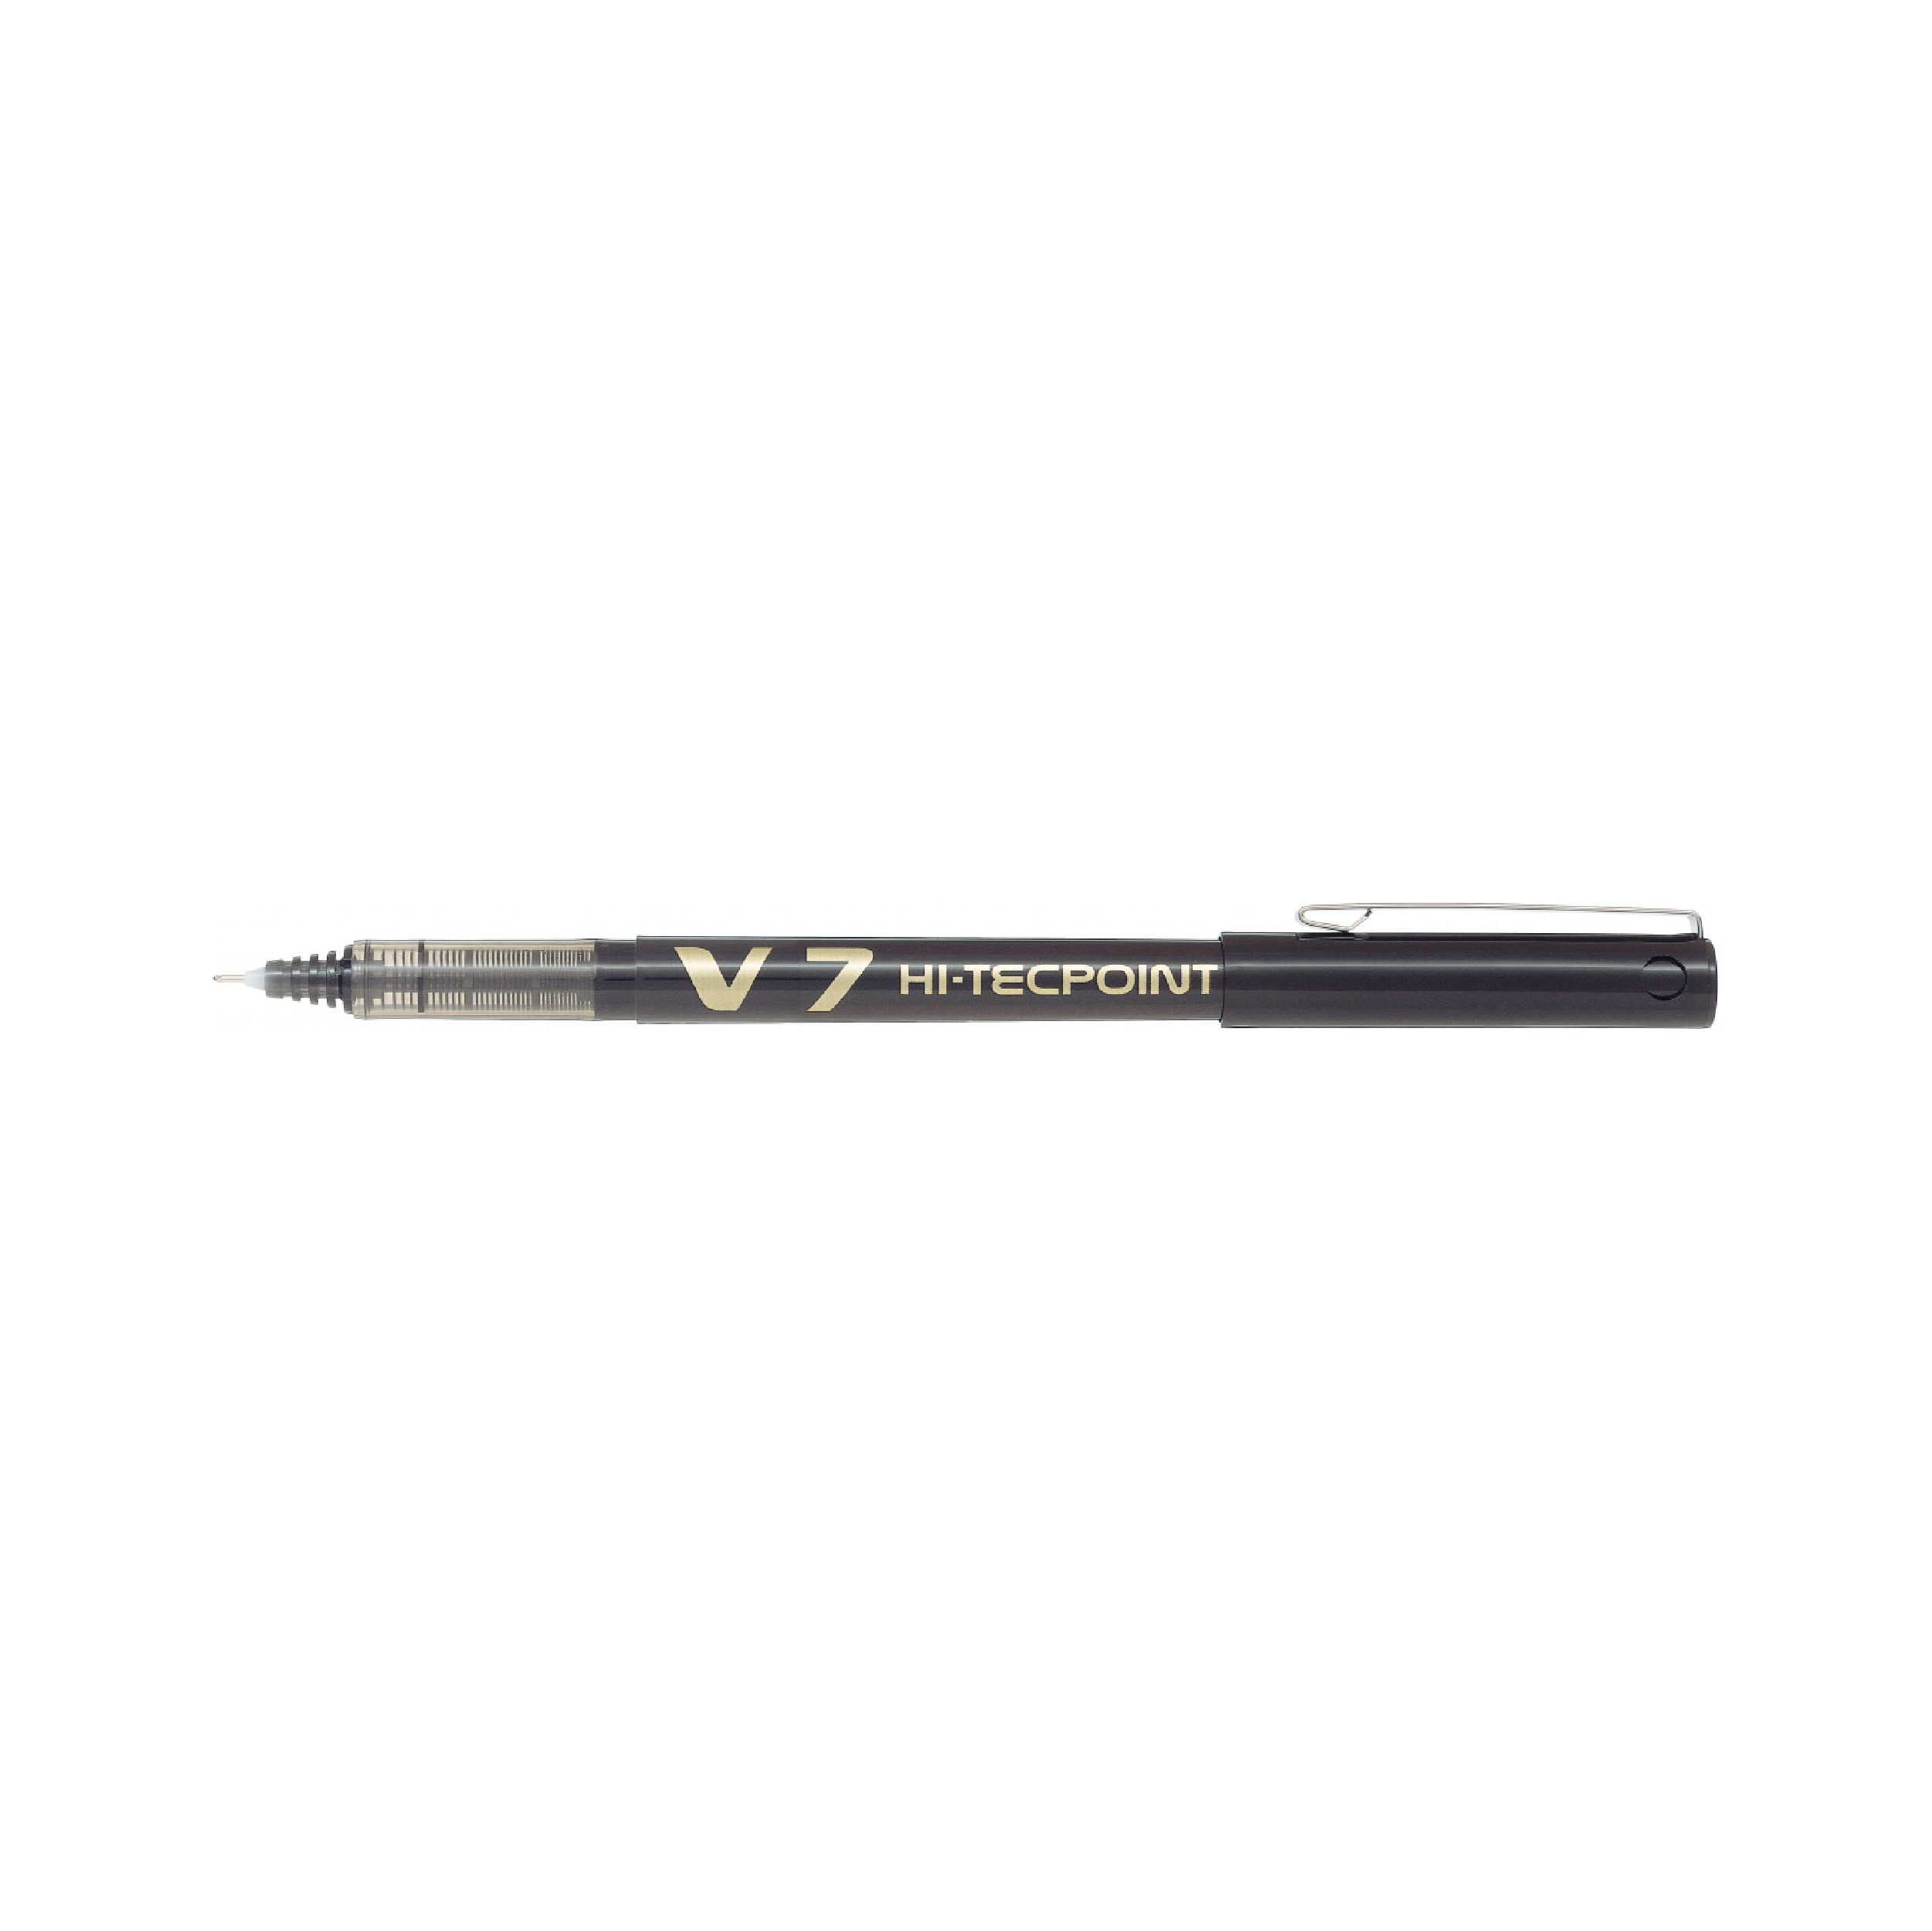 Pilot Hi-Tecpoint Rollerball Pen, 0.7mm (BX-V7)